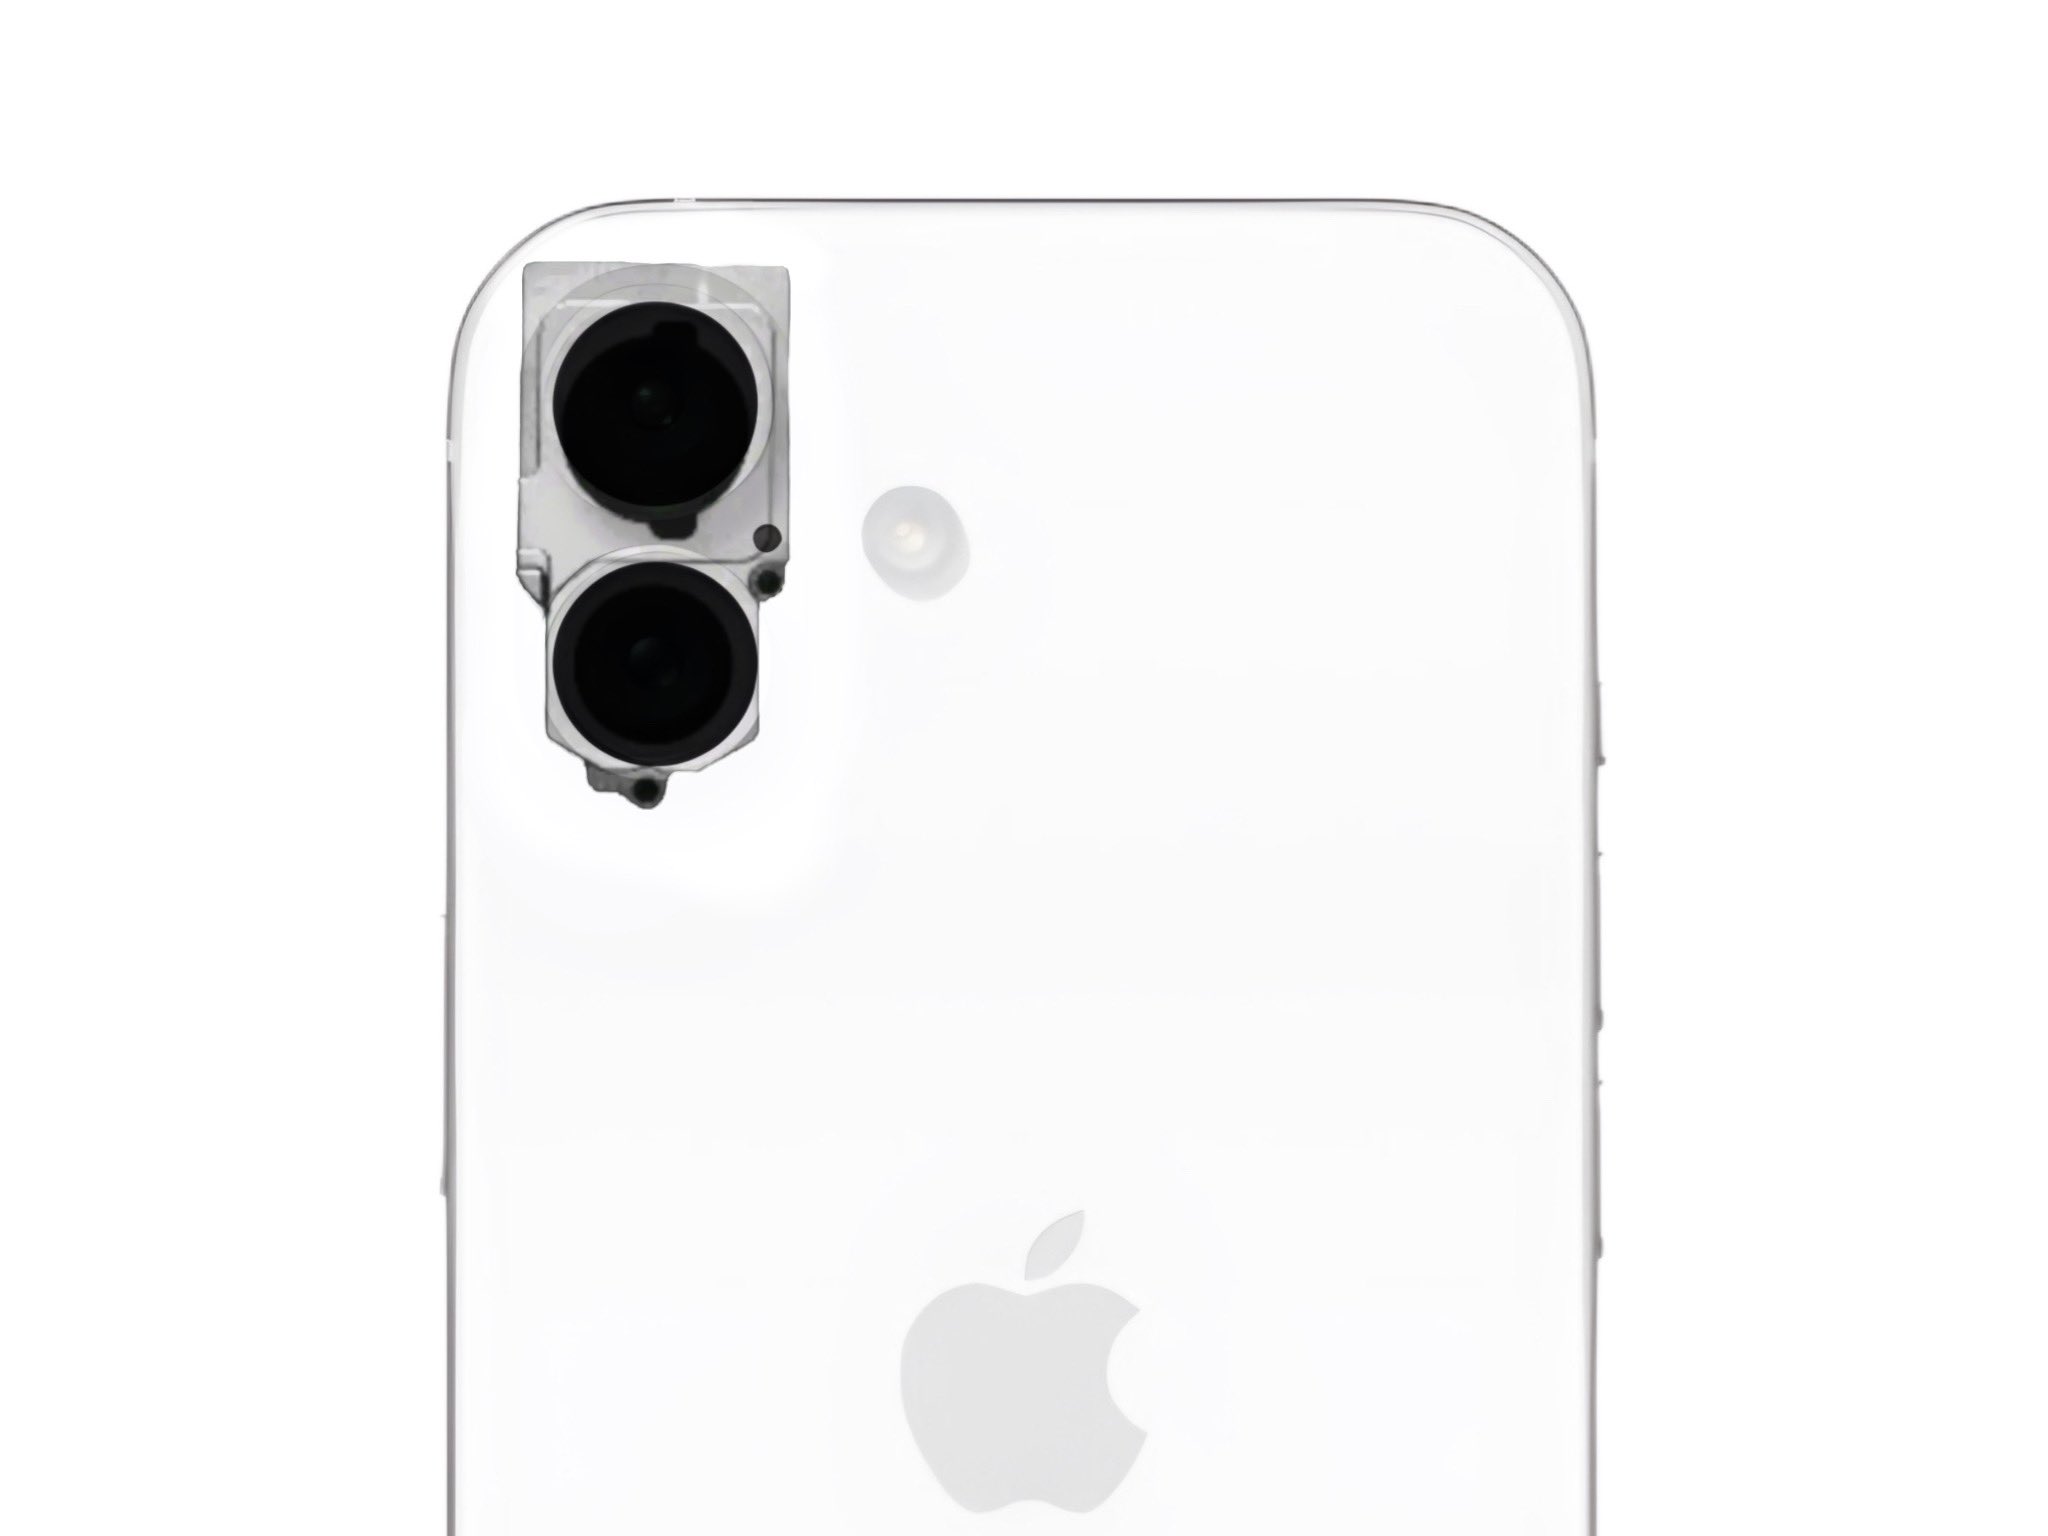 Det första fotot av iPhone 16:s kameraenhet med vertikalt placerade moduler har dykt upp